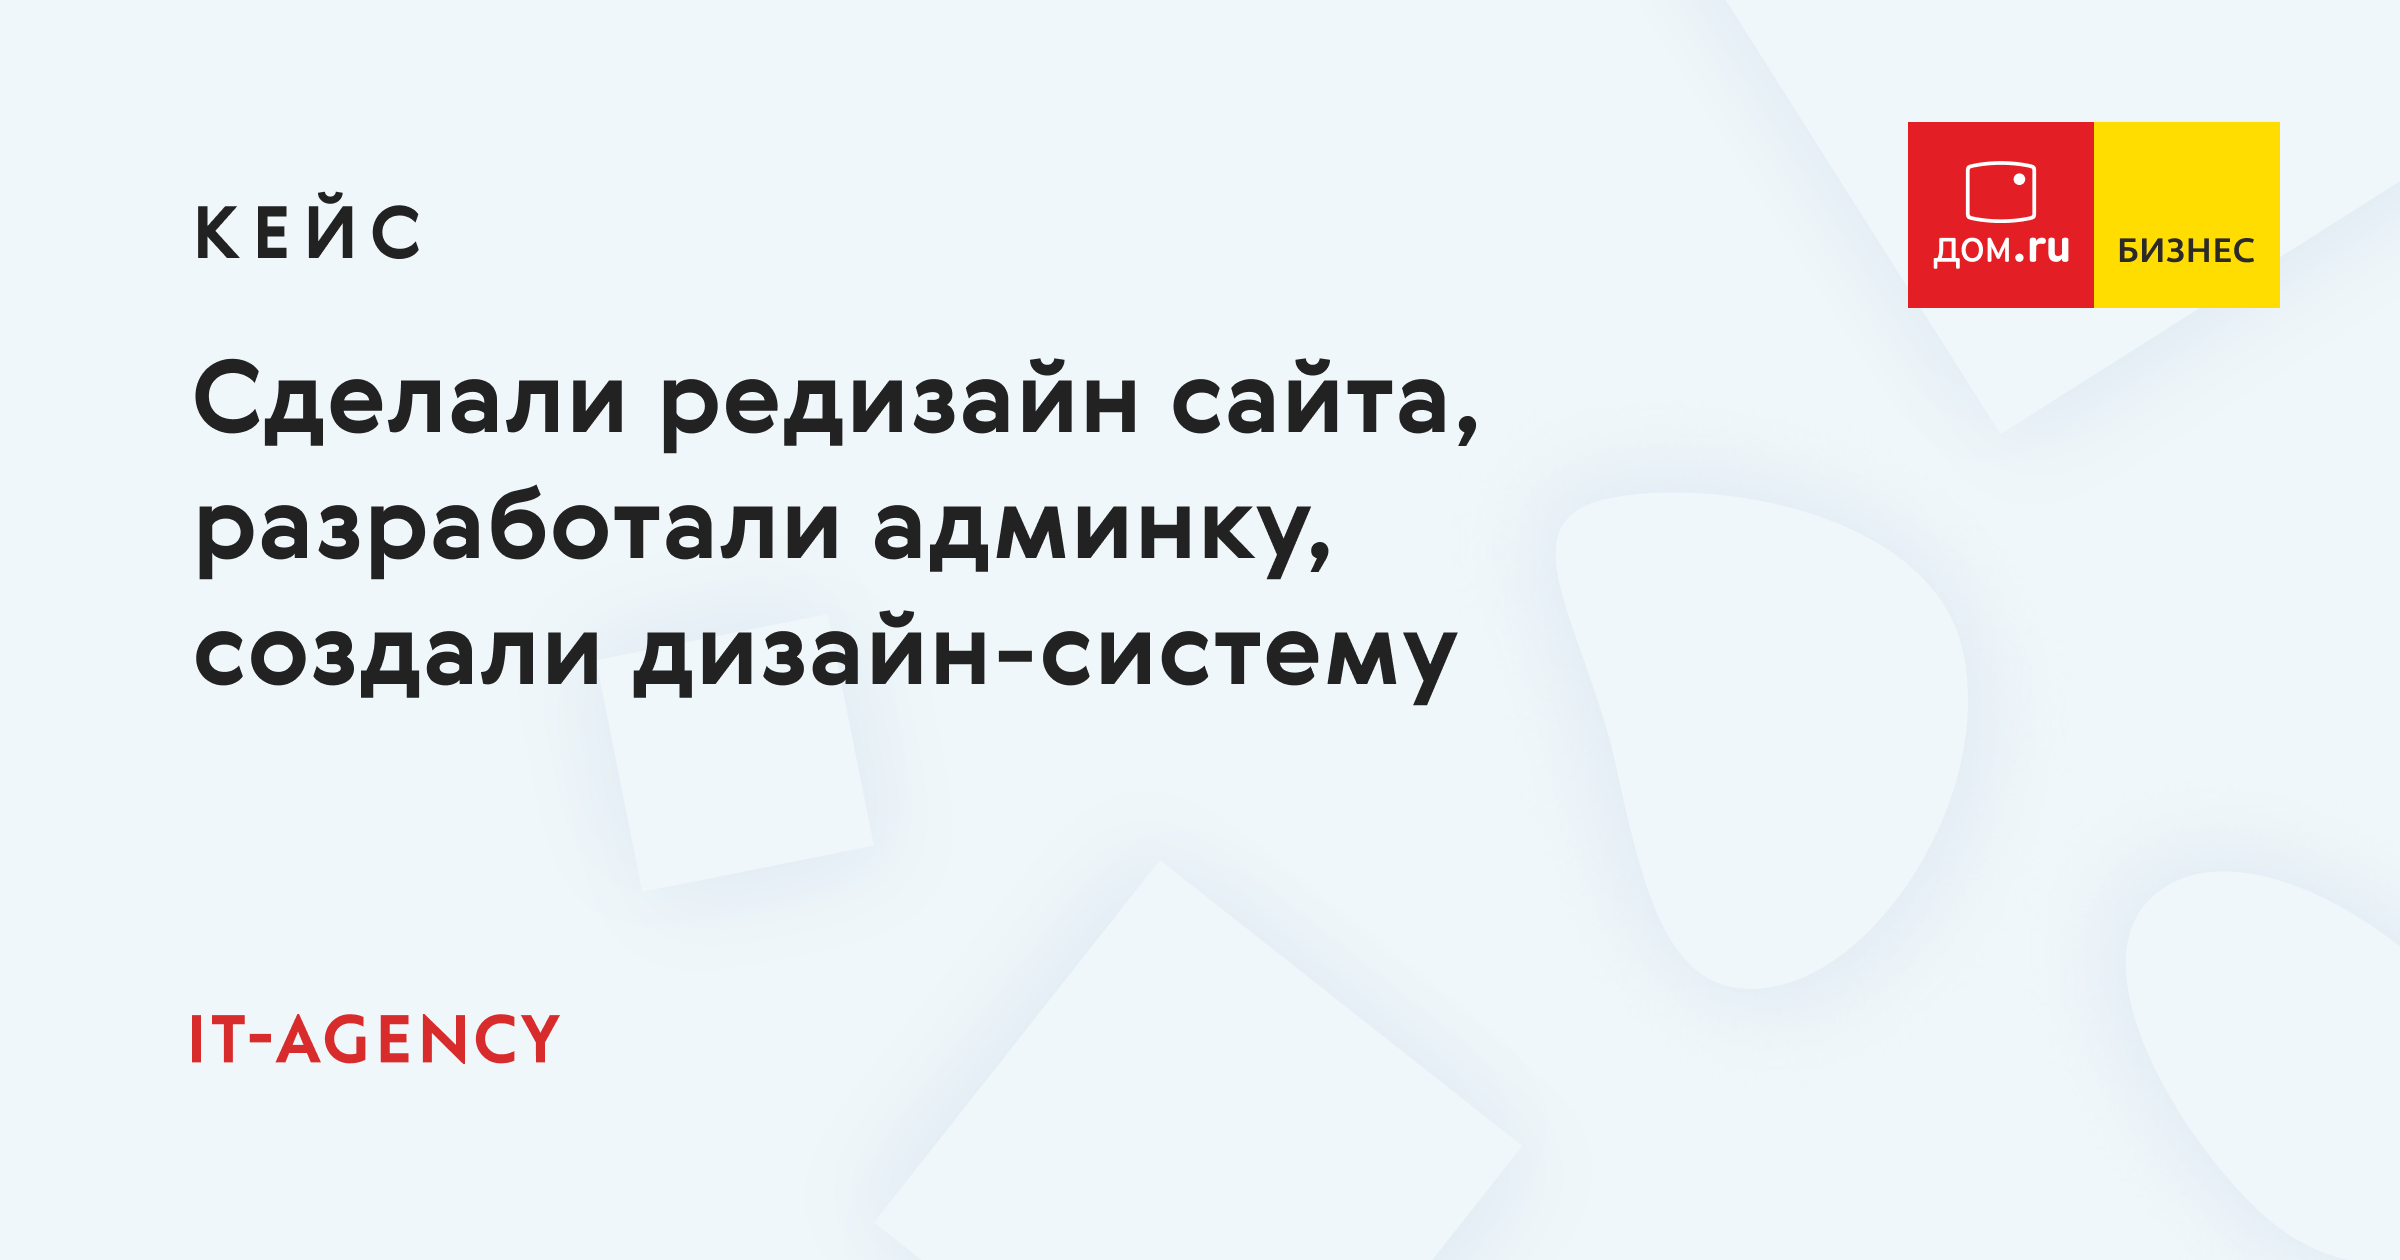 Кейс Дом.ru Бизнес: редизайн сайта, разработка административной панели и создание дизайн-системы